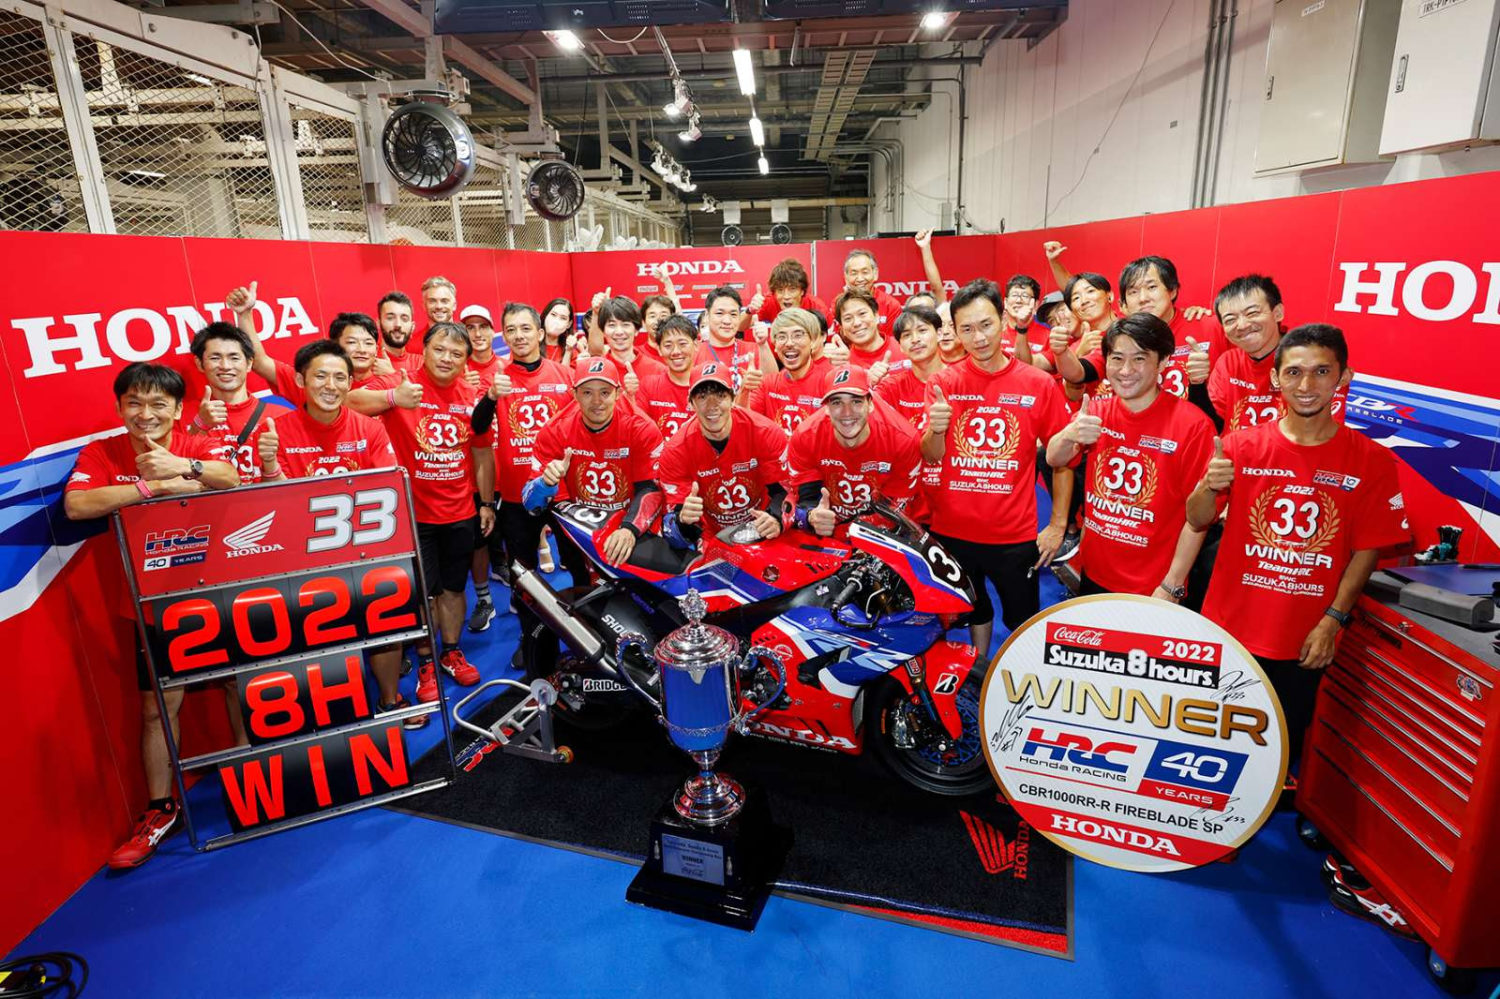 Team HRC vence 8 Horas de Suzuka por mais de uma volta e confirma 28ª vitória para a Honda